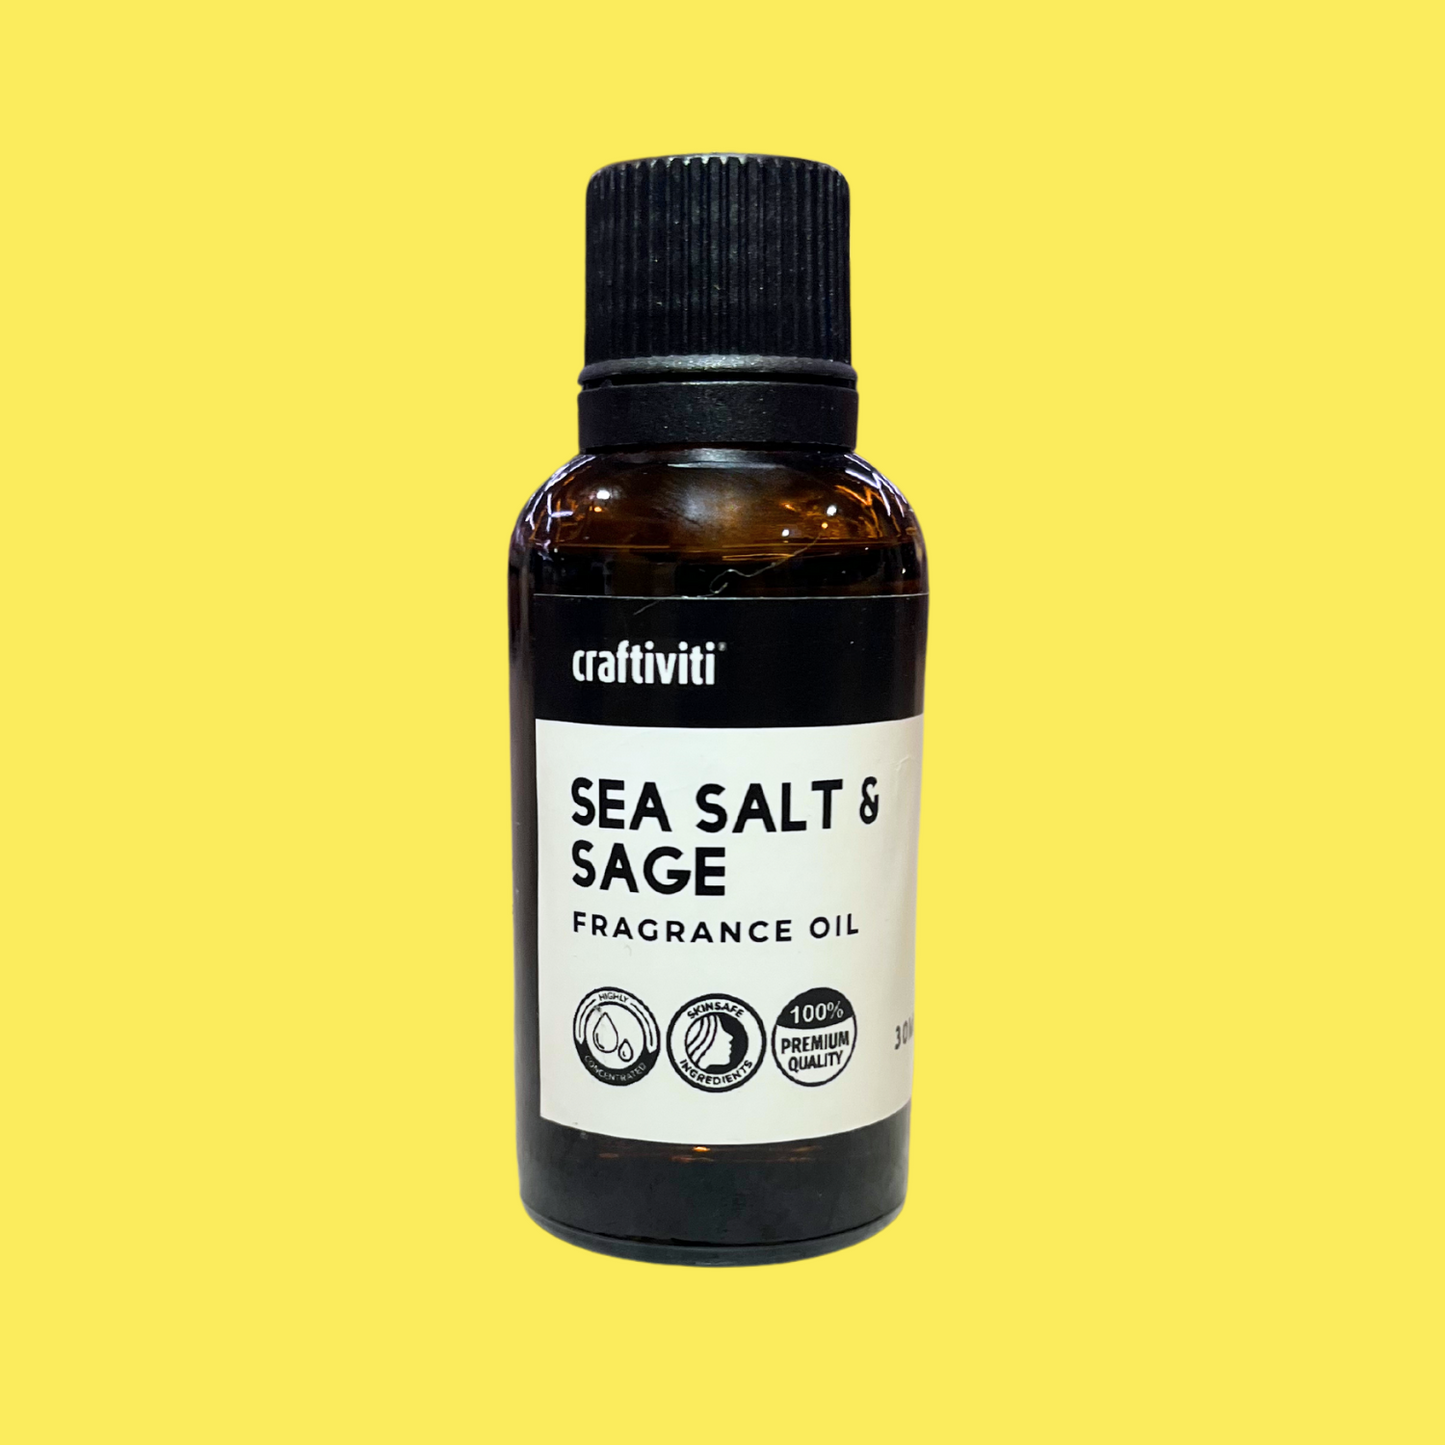 Sea Salt & Sage Fragrance Oil